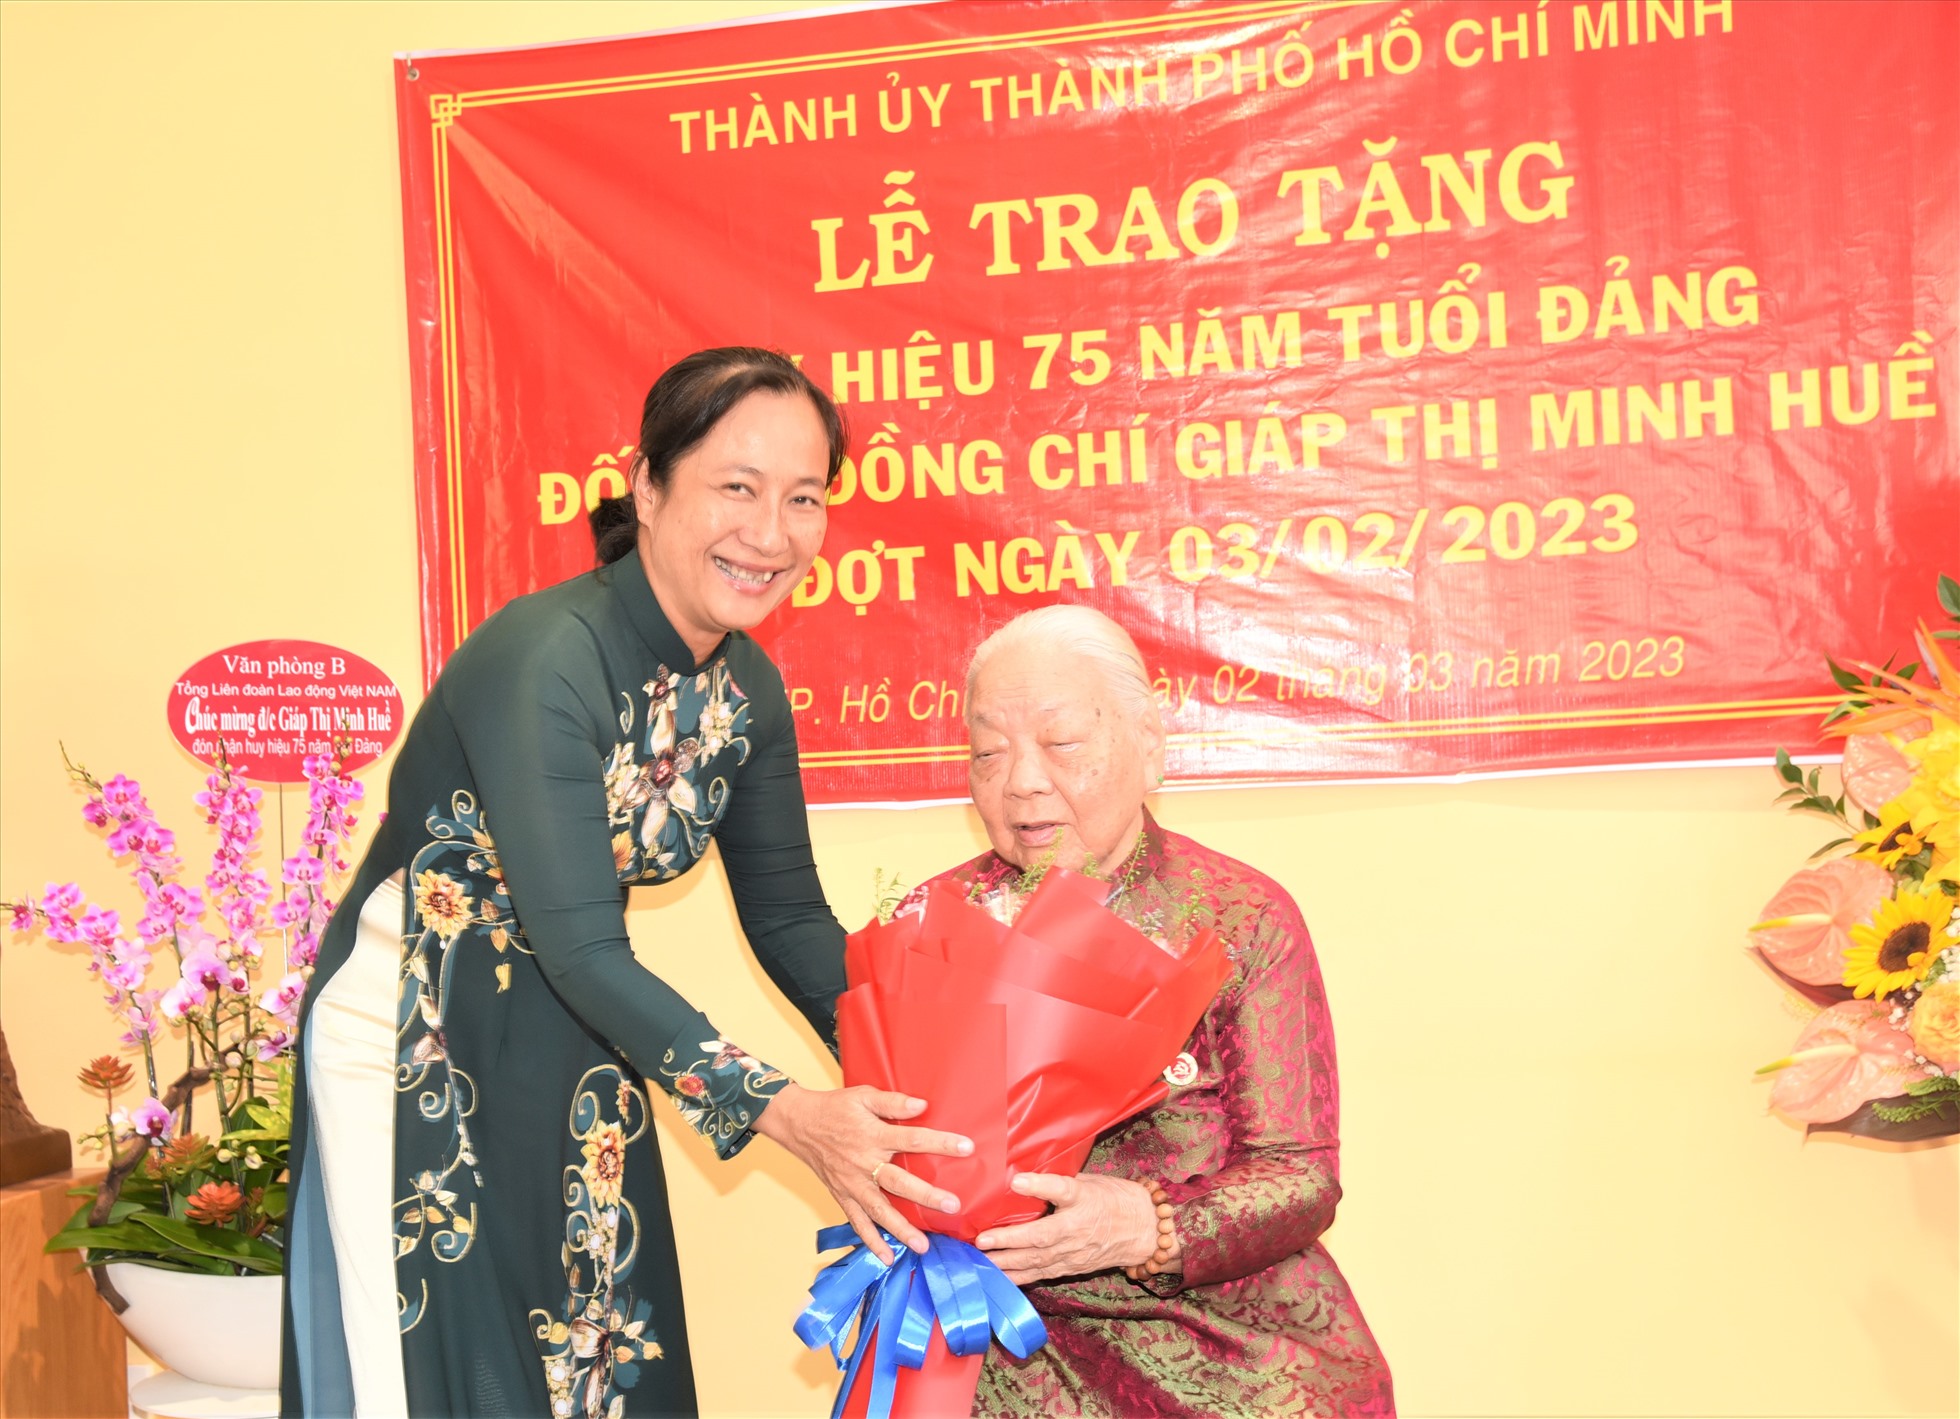 Đại diện Ban Tổ chức Thành ủy TP Thủ Đức tặng hoa chúc mừng Cụ Giáp Thị Minh Huề. Ảnh: Nam Dương